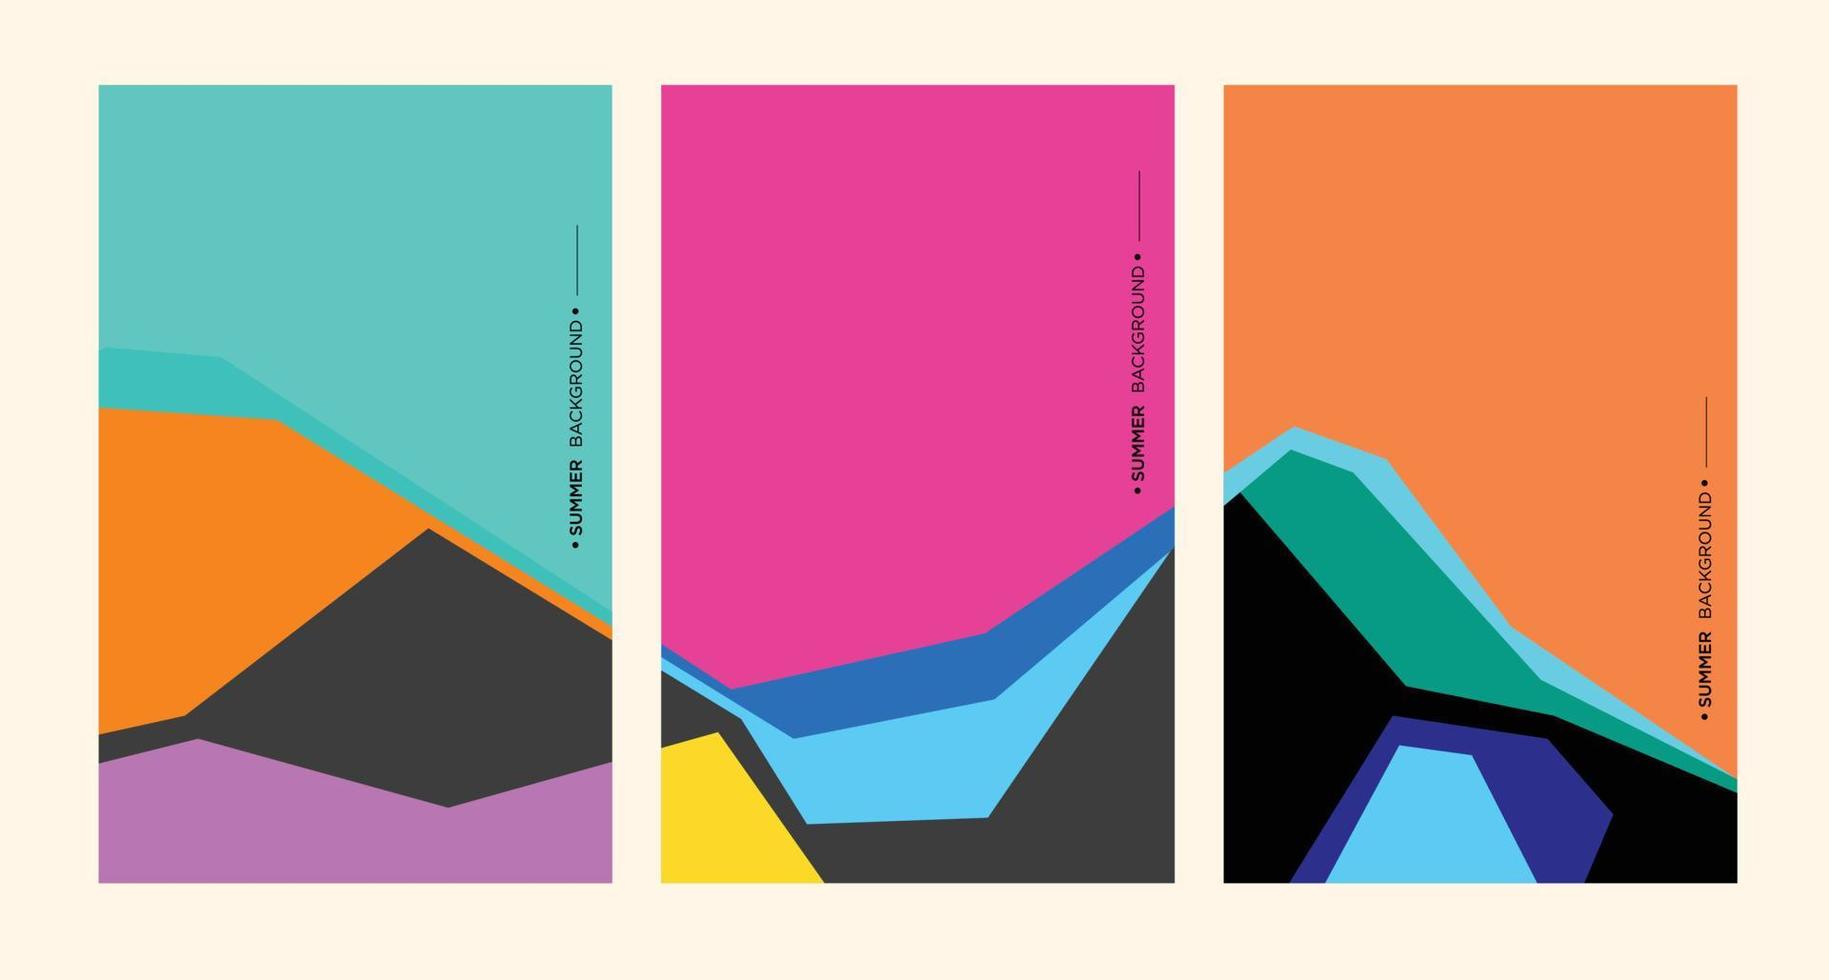 illustrazione di sfondo geometrico astratto colorato per poster estivo vettore